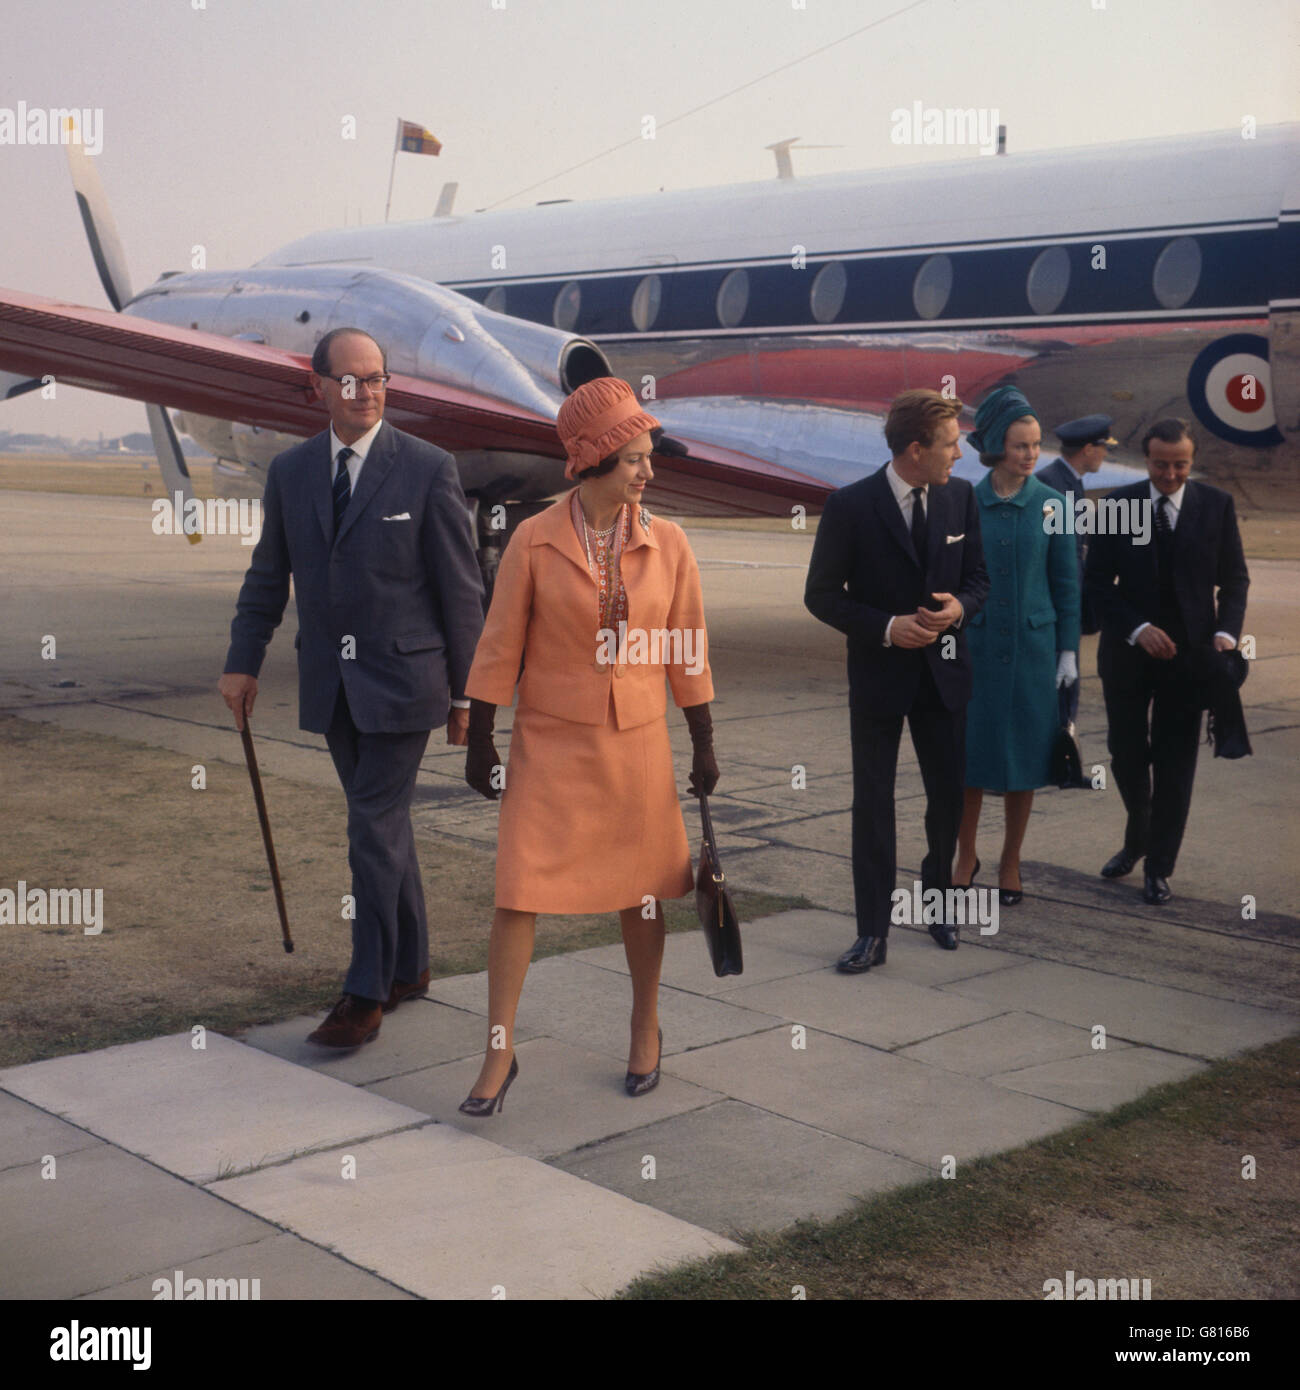 La principessa Margaret e suo marito Lord Snowden all'aeroporto di Londra all'arrivo dalla loro visita in Danimarca in relazione alla settimana britannica. 05/10/1964 Foto Stock